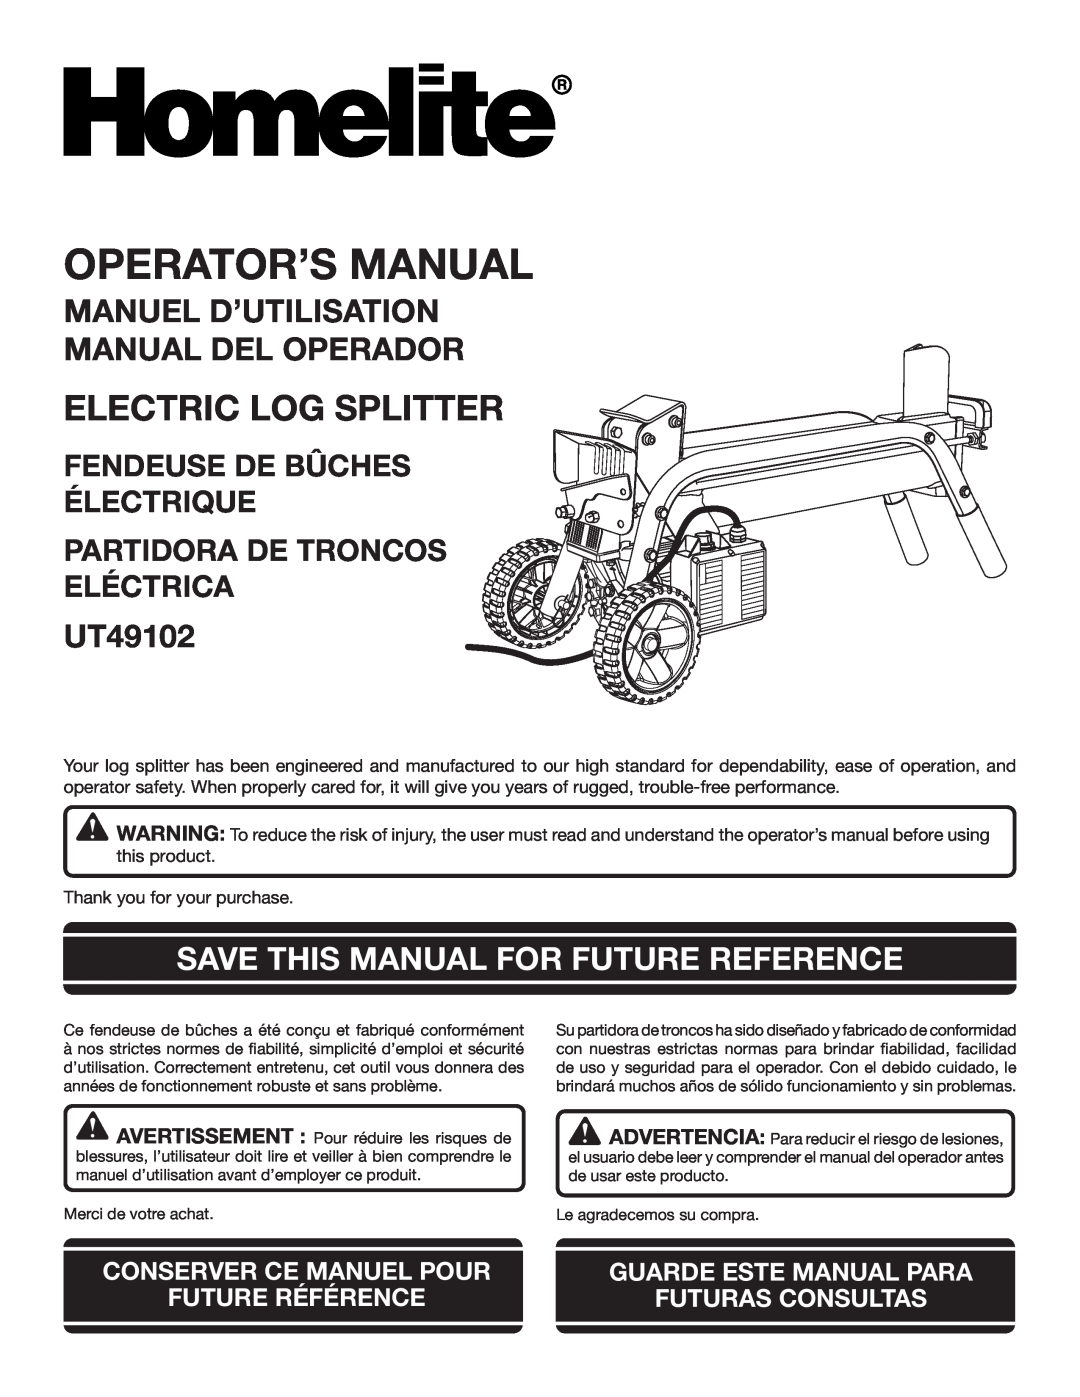 Homelite UT49102 manuel dutilisation Manuel D’Utilisation Manual Del Operador, Save This Manual For Future Reference 